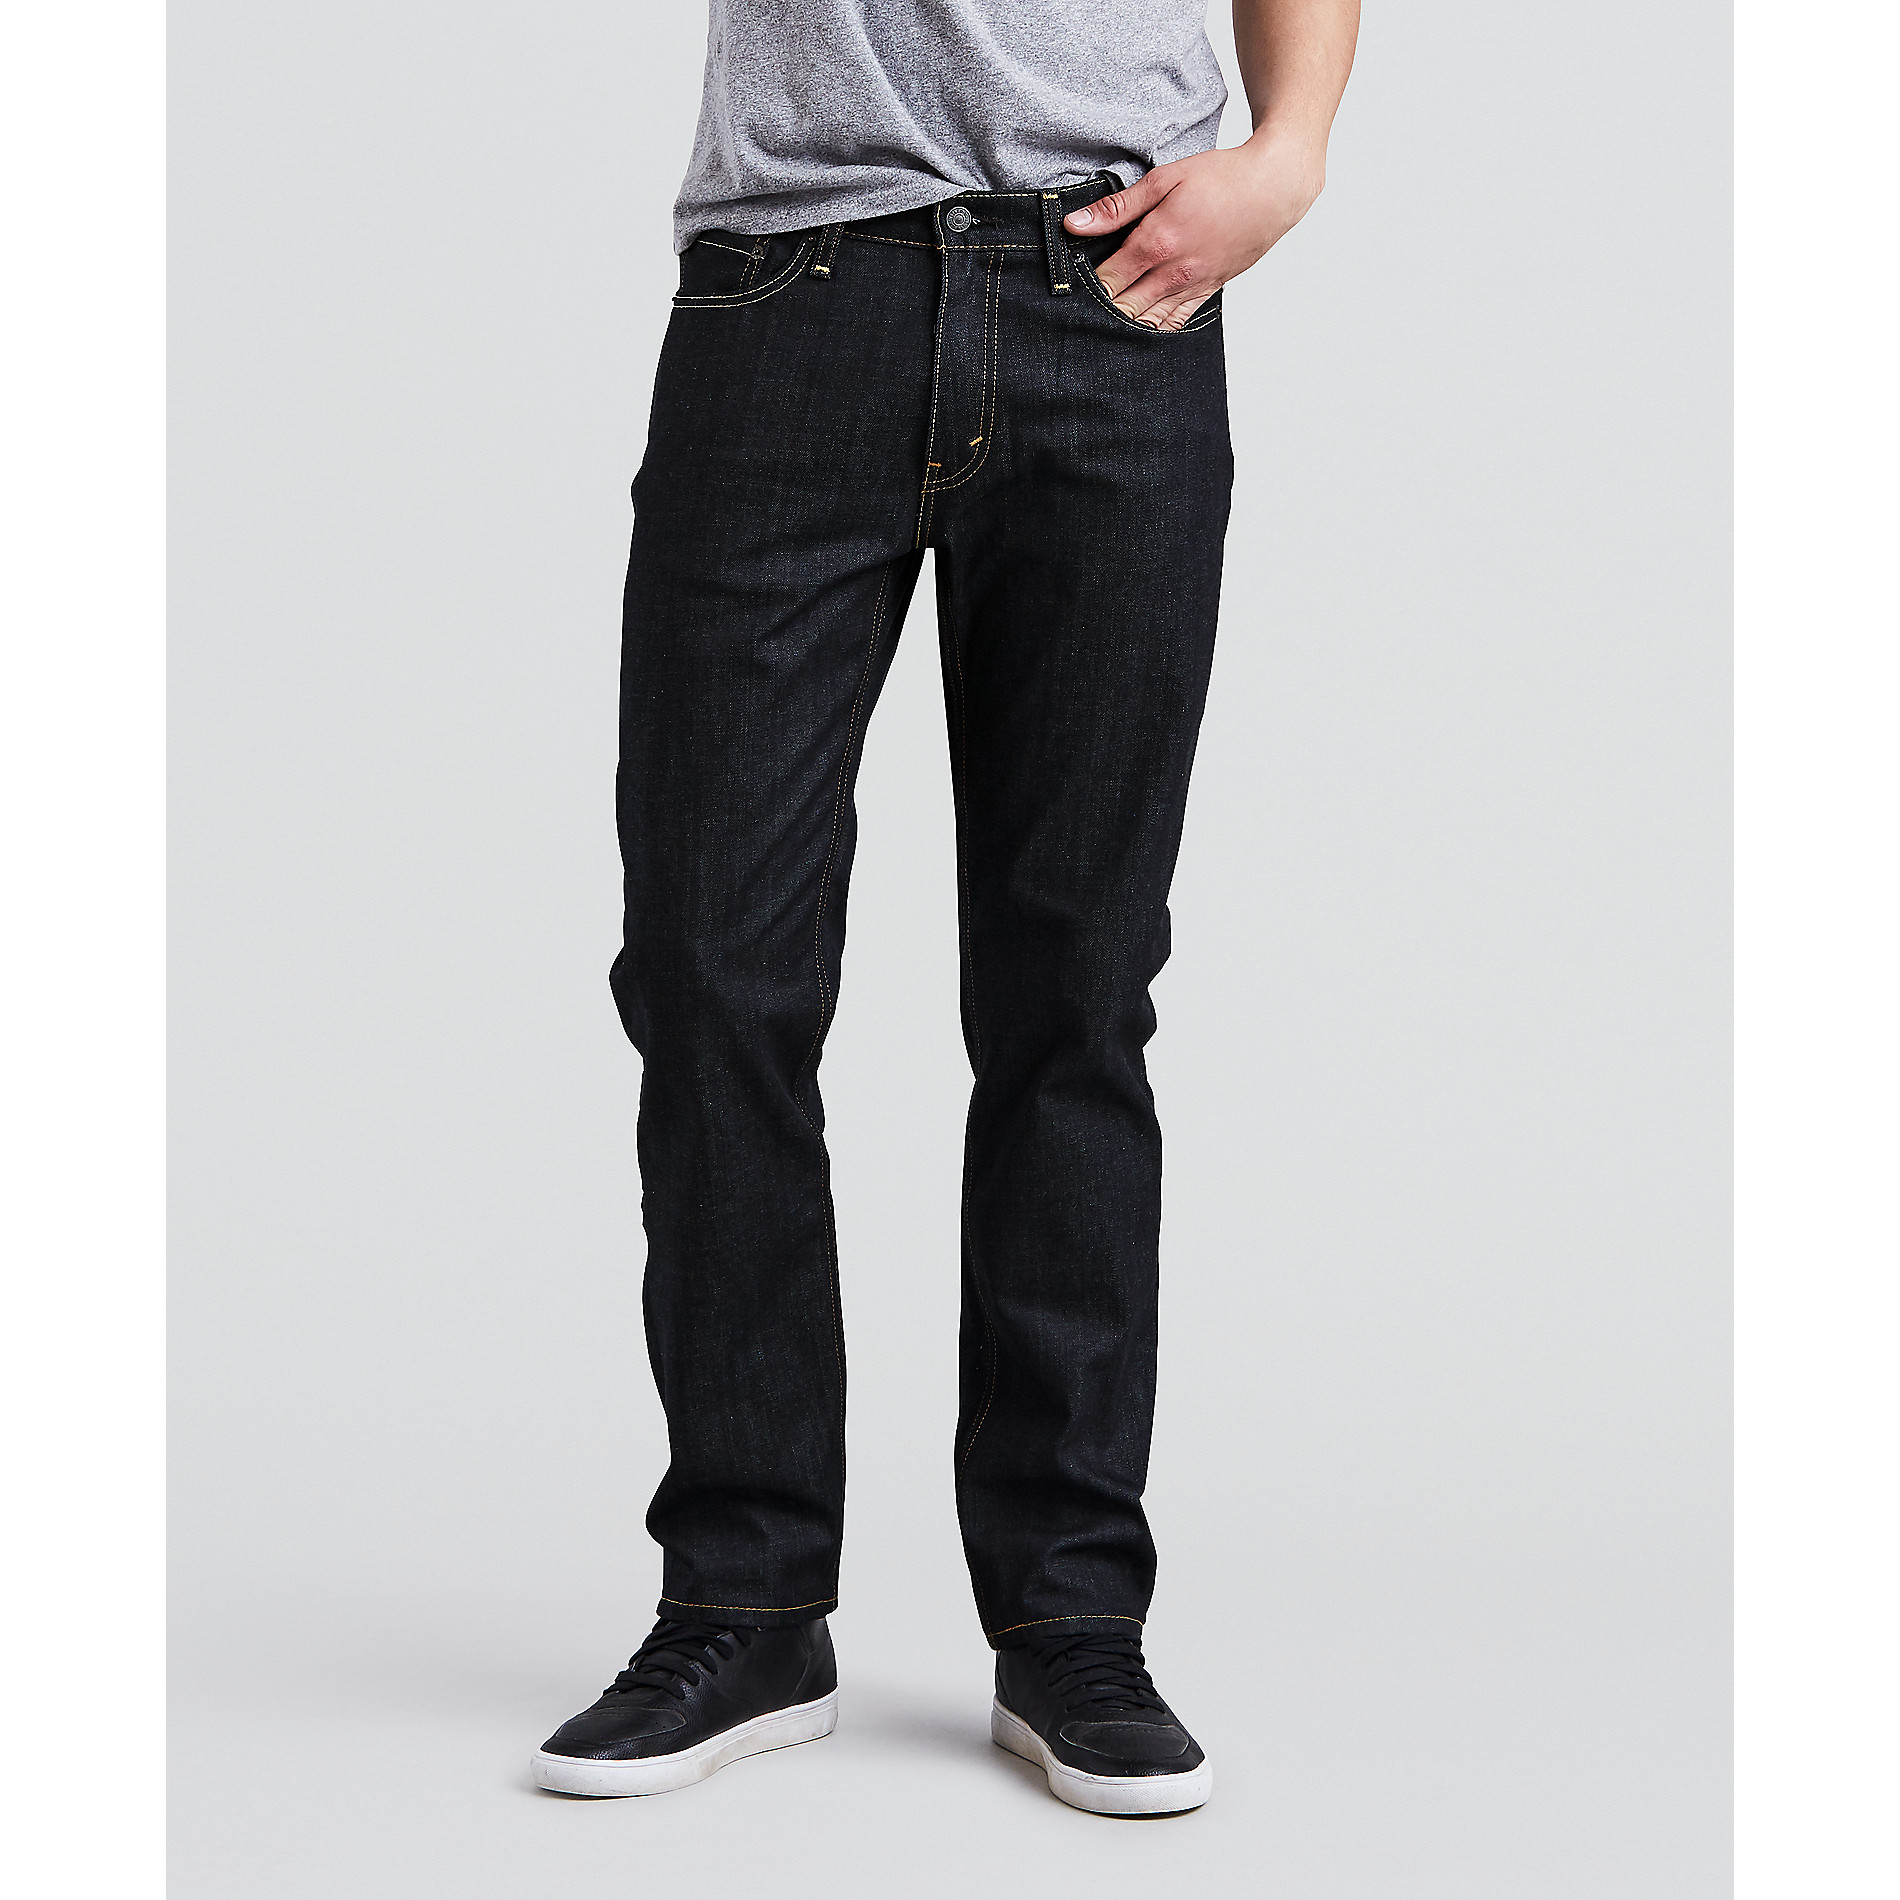 Levi's Men's 541 Athletic Fit Jeans | Shop Your Way: Online Shopping ...